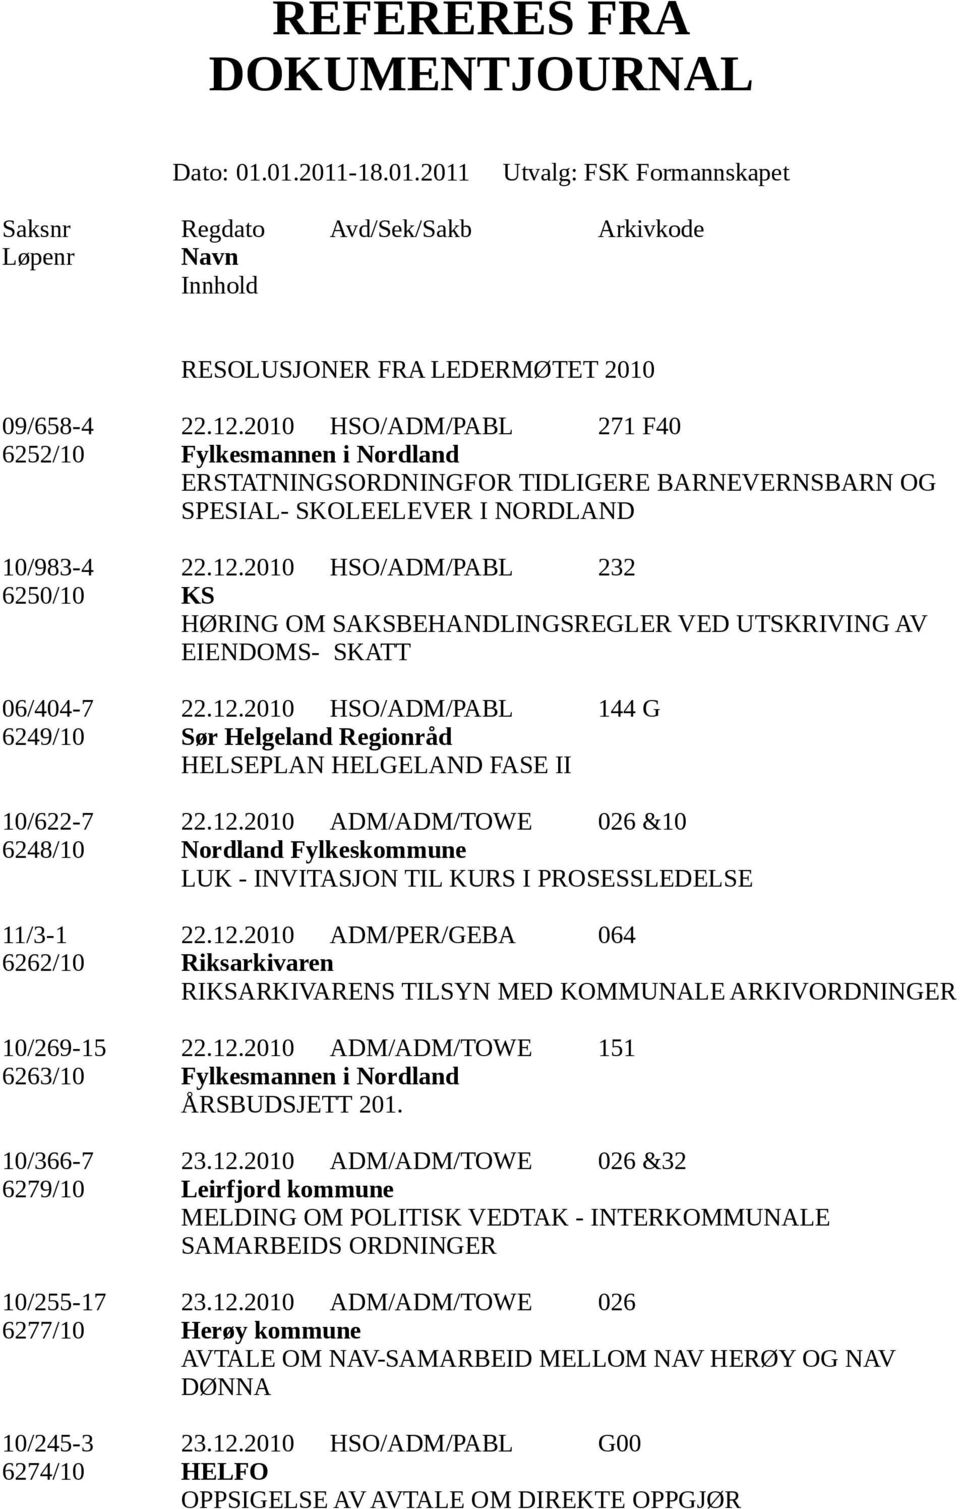 12.2010 ADM/ADM/TOWE 026 &10 6248/10 Nordland Fylkeskommune LUK - INVITASJON TIL KURS I PROSESSLEDELSE 11/3-1 22.12.2010 ADM/PER/GEBA 064 6262/10 Riksarkivaren RIKSARKIVARENS TILSYN MED KOMMUNALE ARKIVORDNINGER 10/269-15 22.